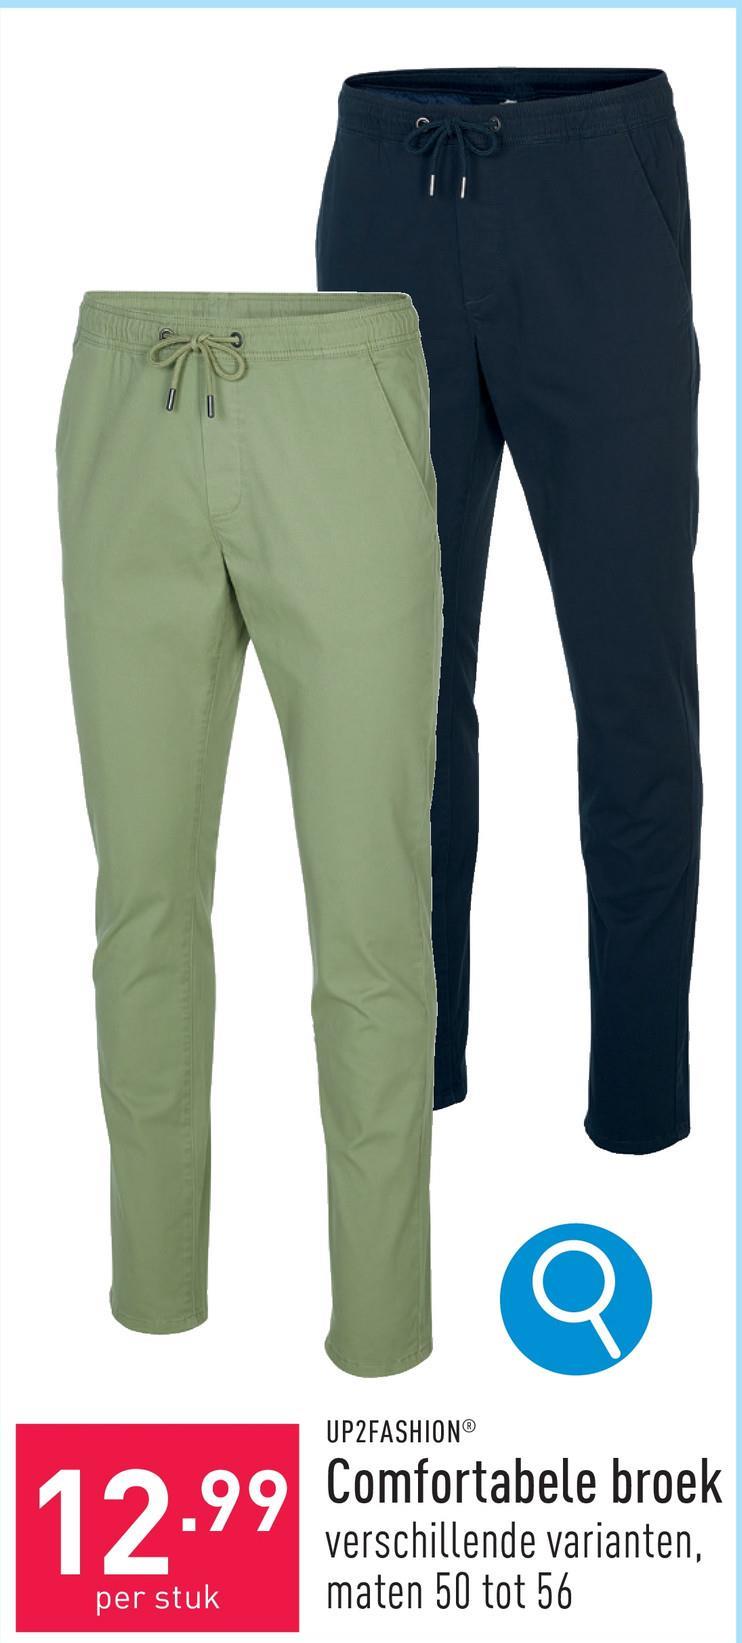 Comfortabele broek katoen/elastaan (Lycra®), tapered fit, keuze uit verschillende varianten, maten 50 tot 56, OEKO-TEX®-gecertificeerd